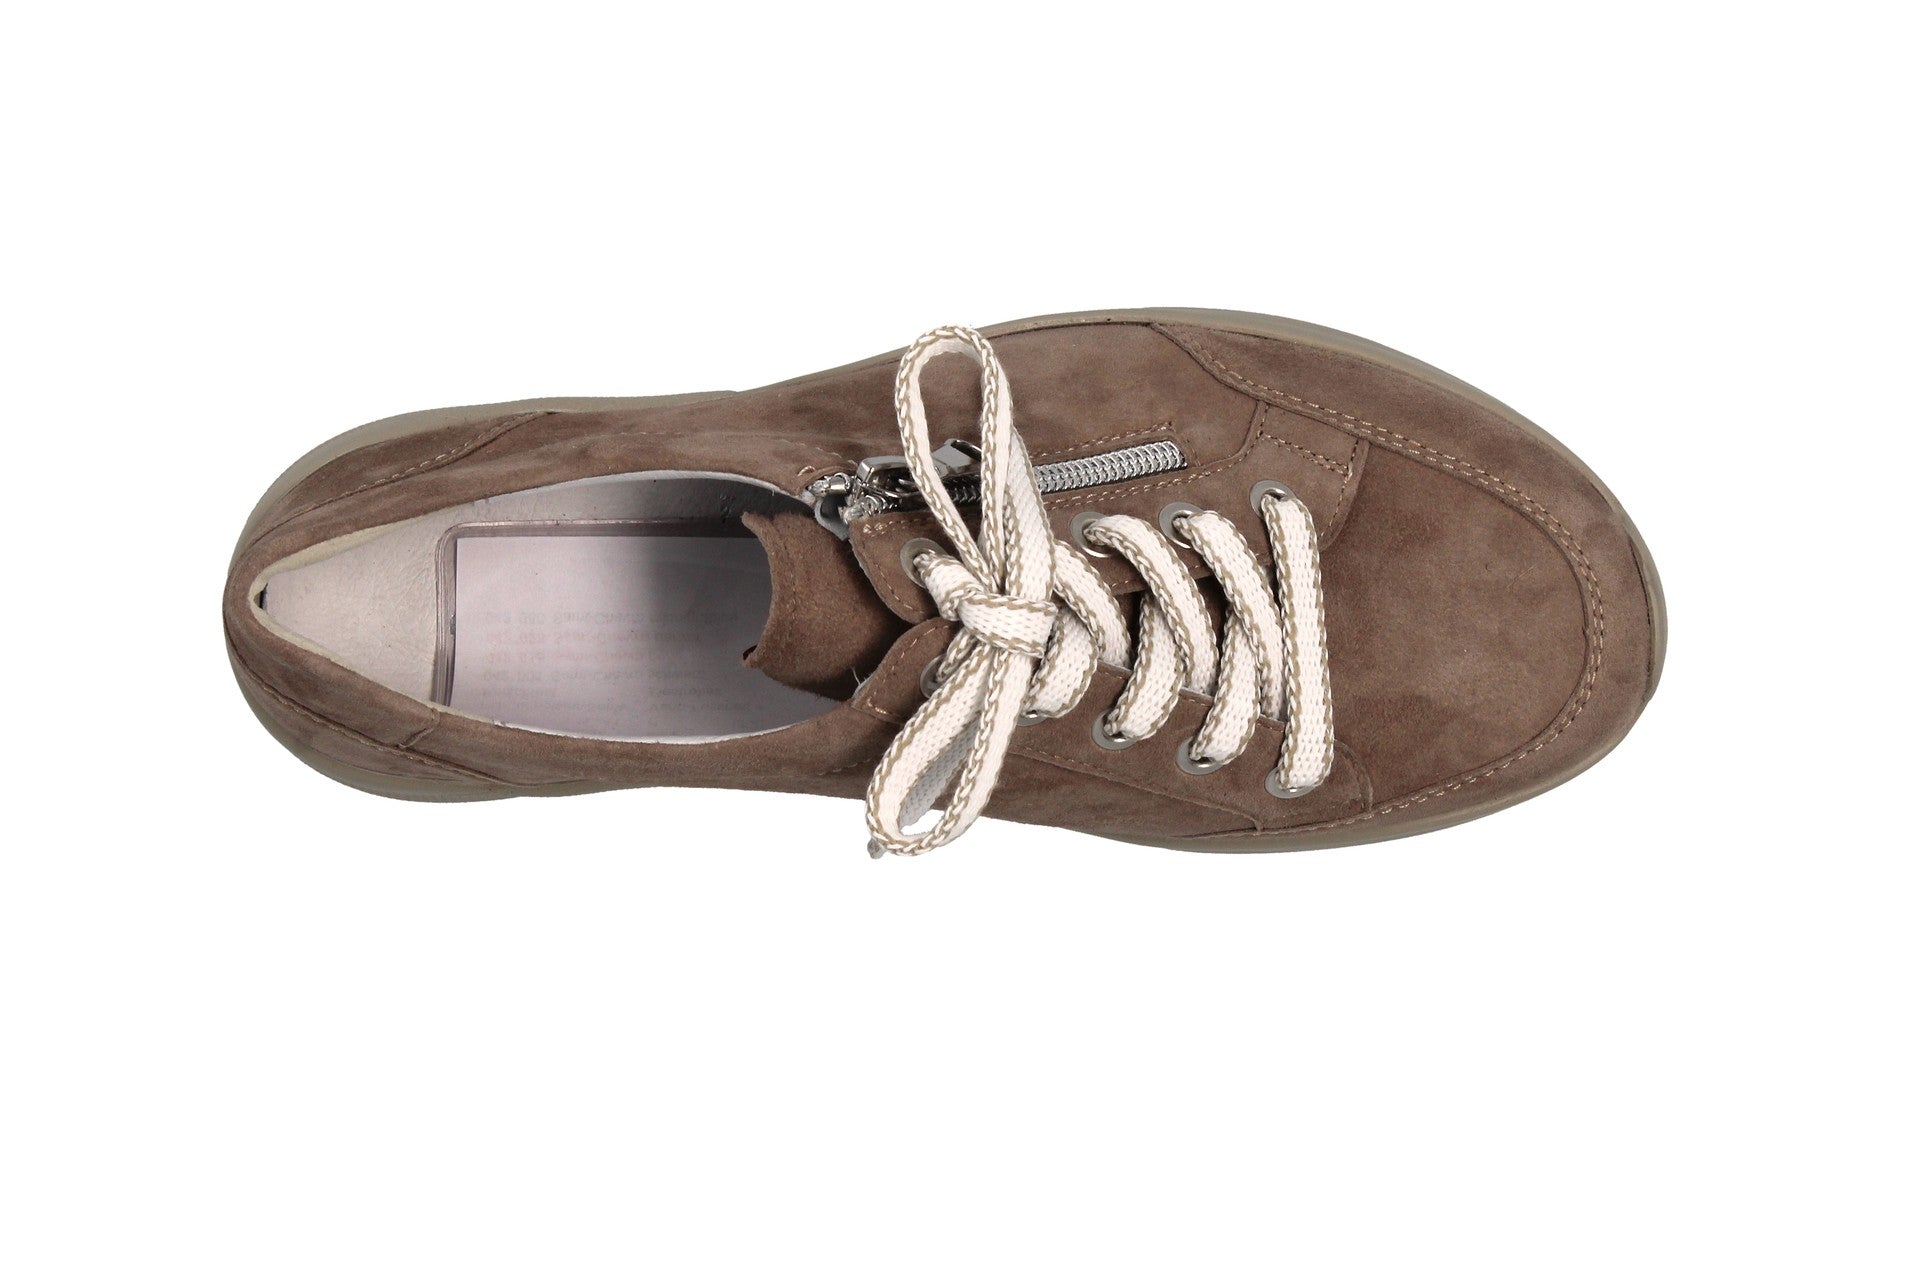 Siggi – panna – lace-up shoe